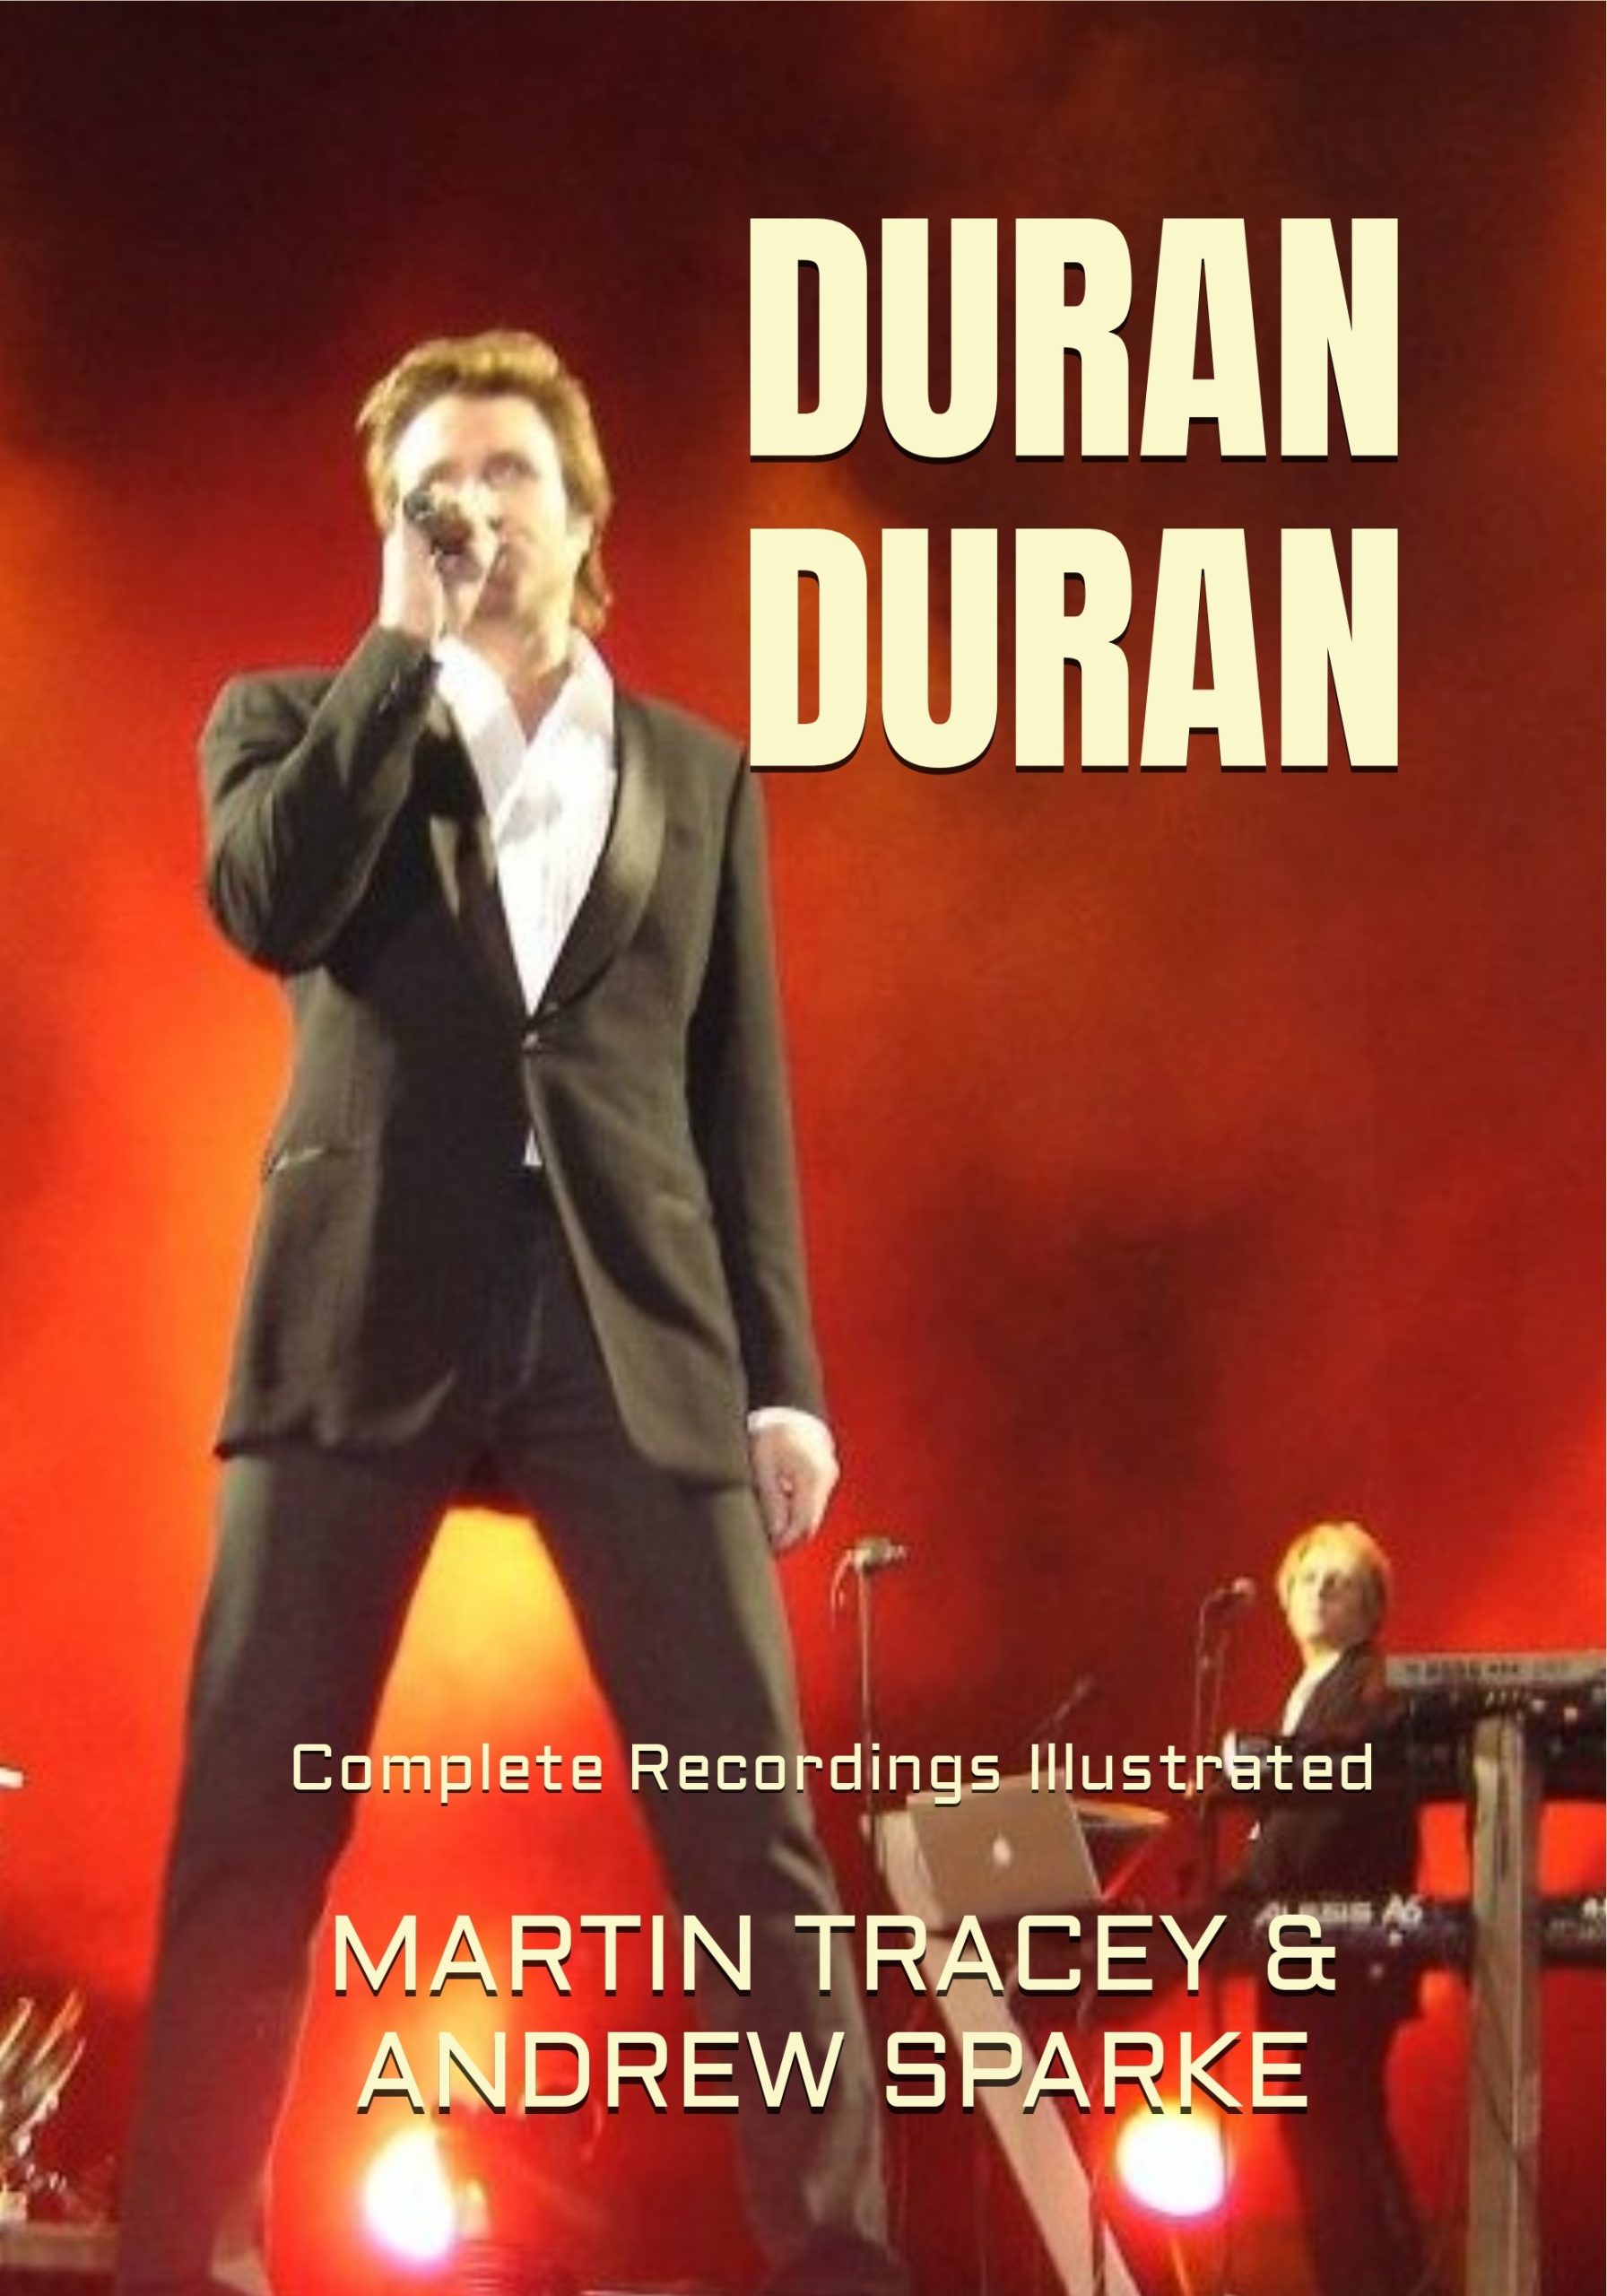 book cover discography Duran Duran